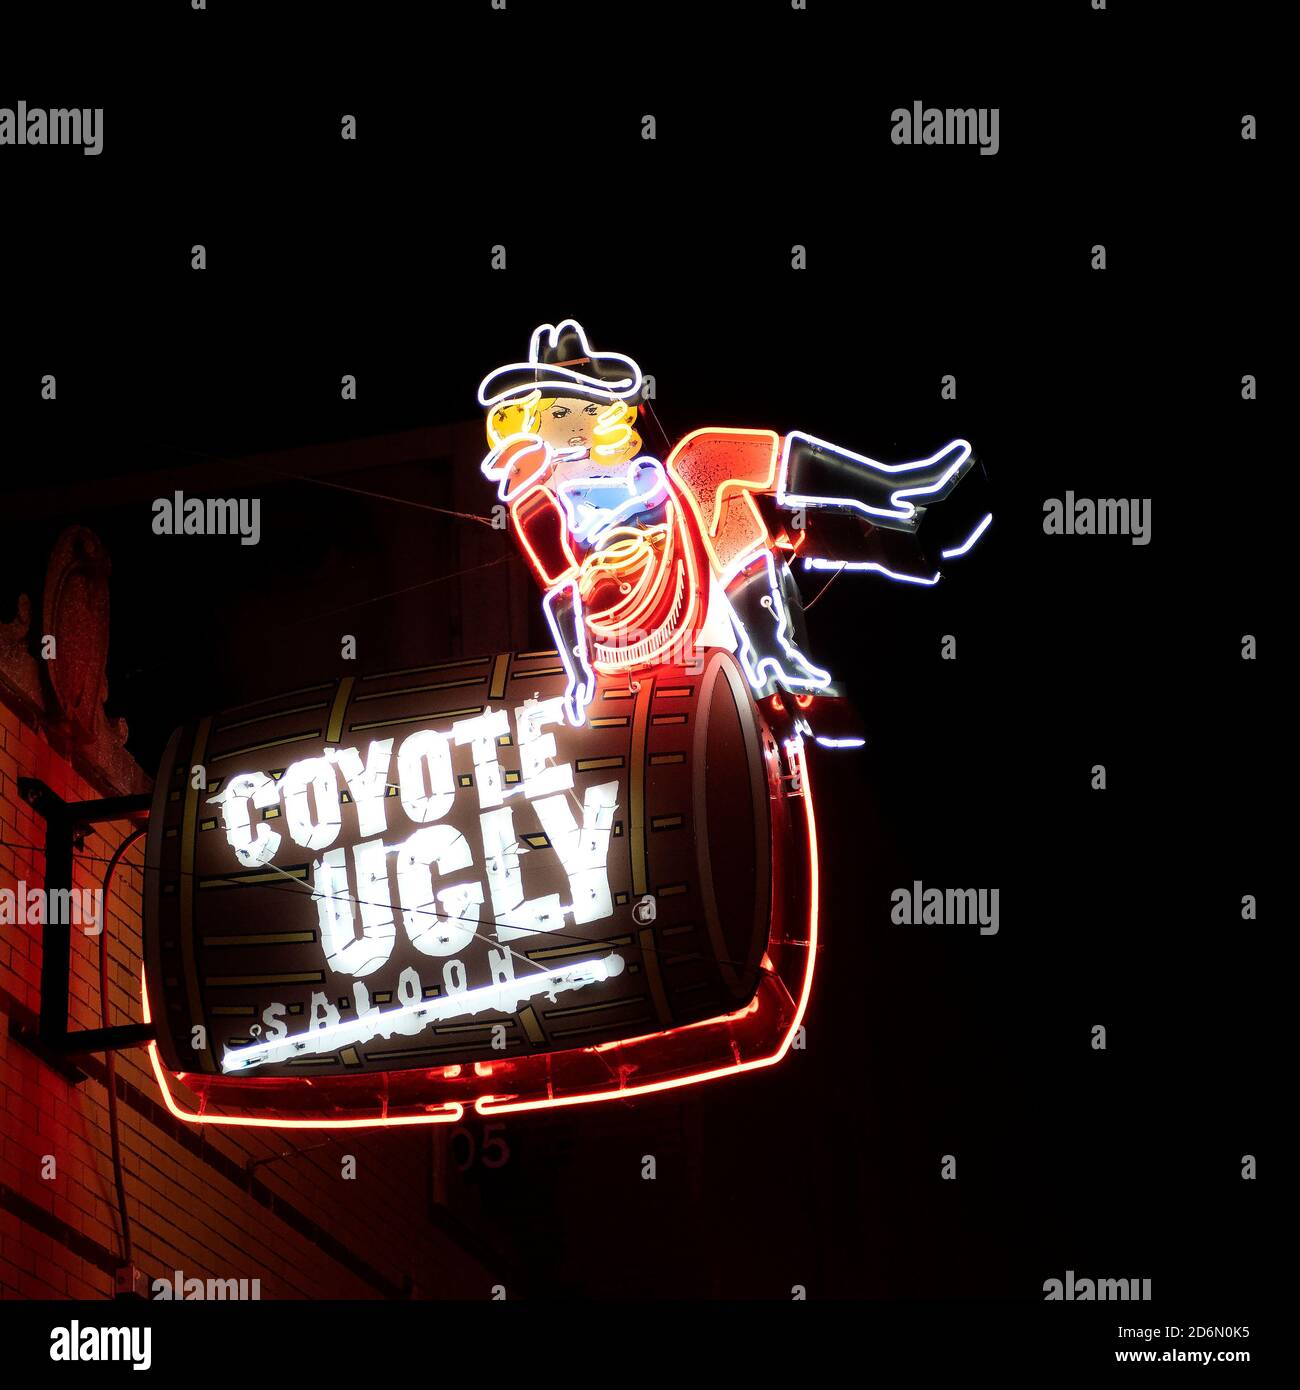 Memphis, TN, USA - 24. September 2019: Neonschild für Coyote Ugly Saloon auf der berühmten Beale Street. Es gehört zu einer Kette von Bars und wurde in vorgestellt Stockfoto